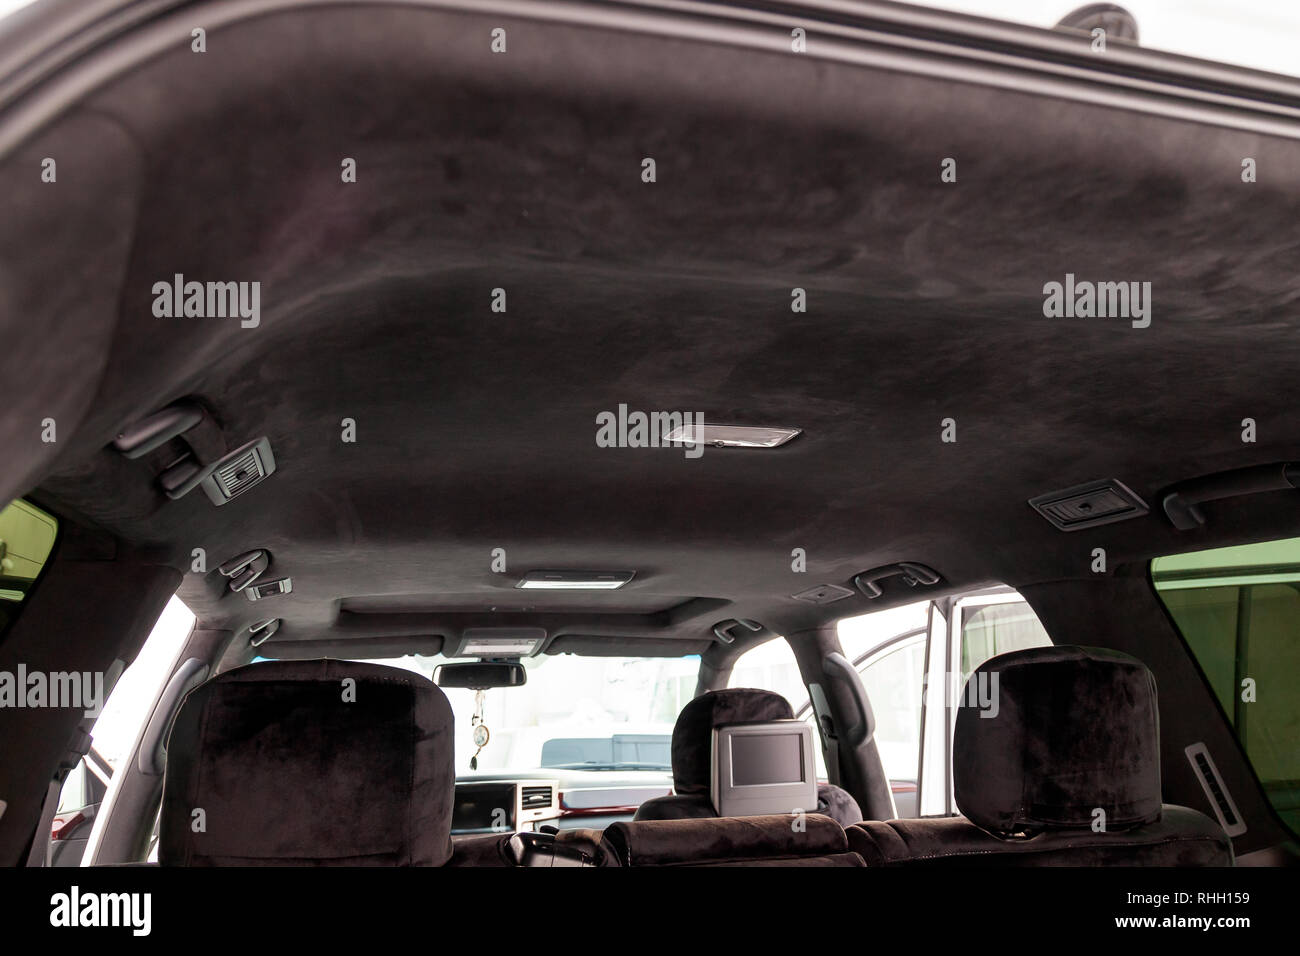 Die Decke der SUV-Auto von Schwarz weiches Material alkantara in der  Werkstatt für Tuning und Styling der Innenraum Stockfotografie - Alamy